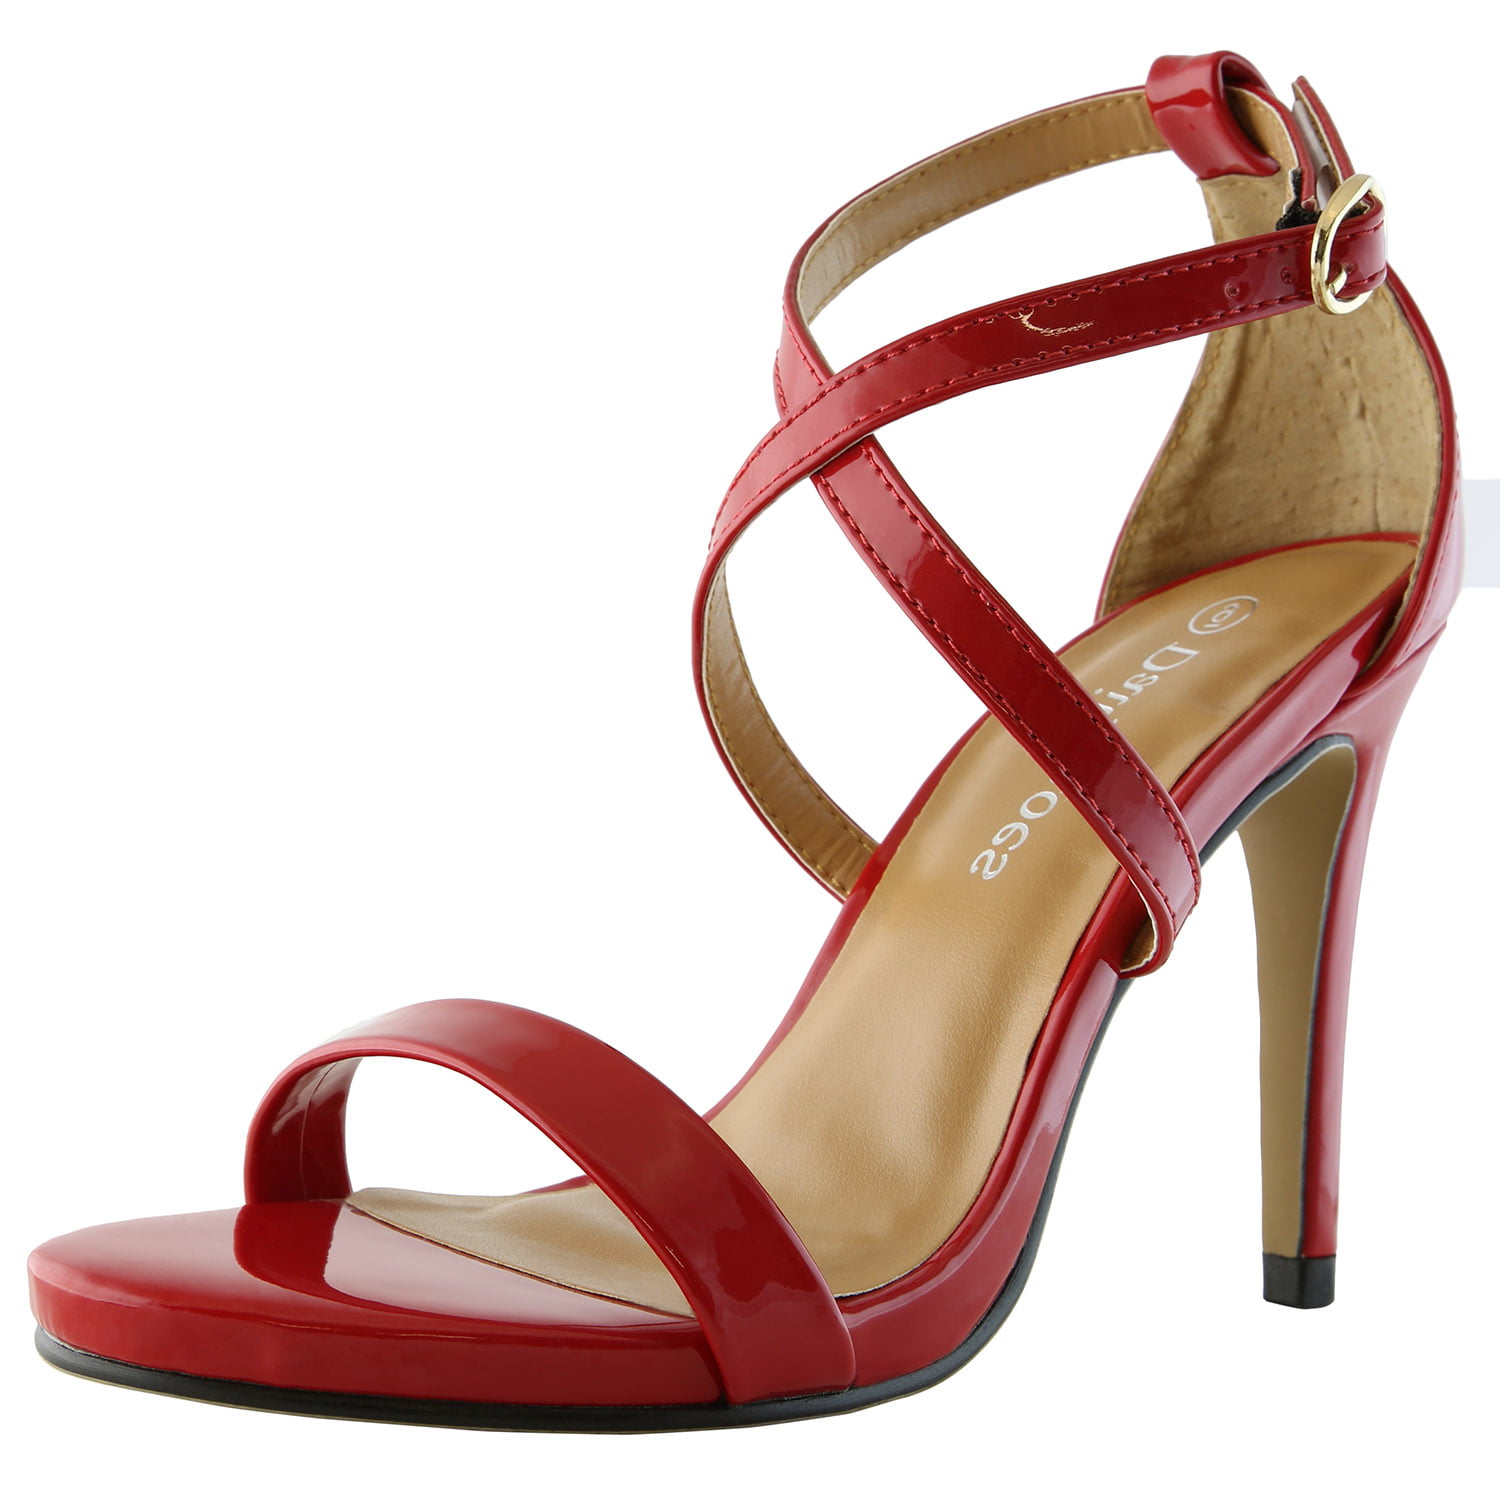 red dress sandals low heel